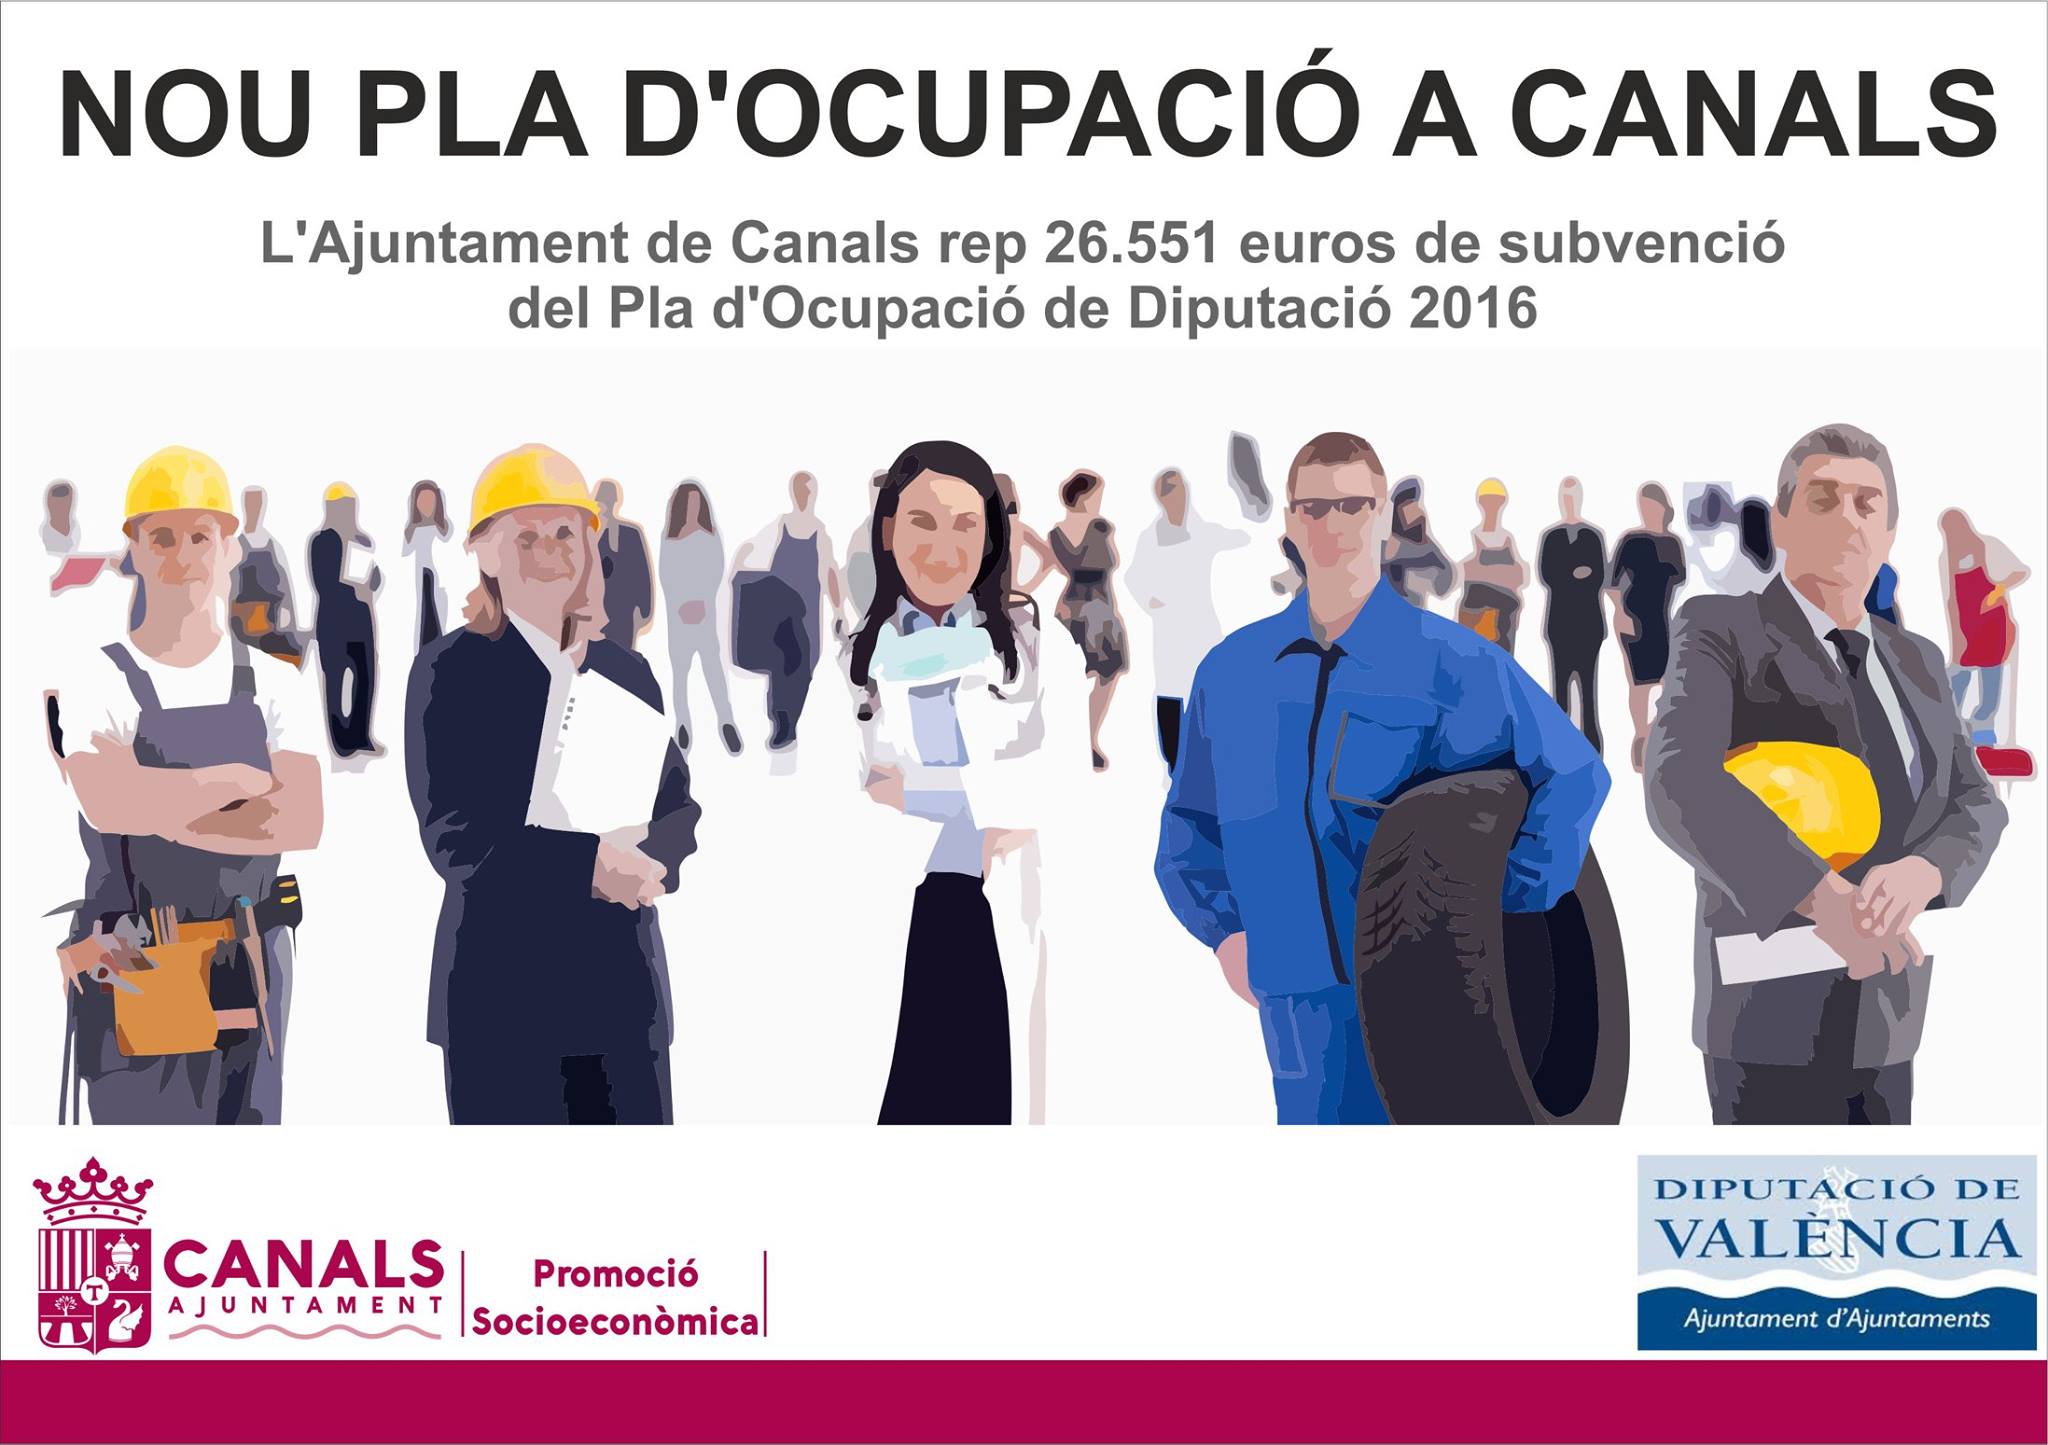 2017.01.25 Nou pla ocupació a Canals. Ajuntament de Canals.